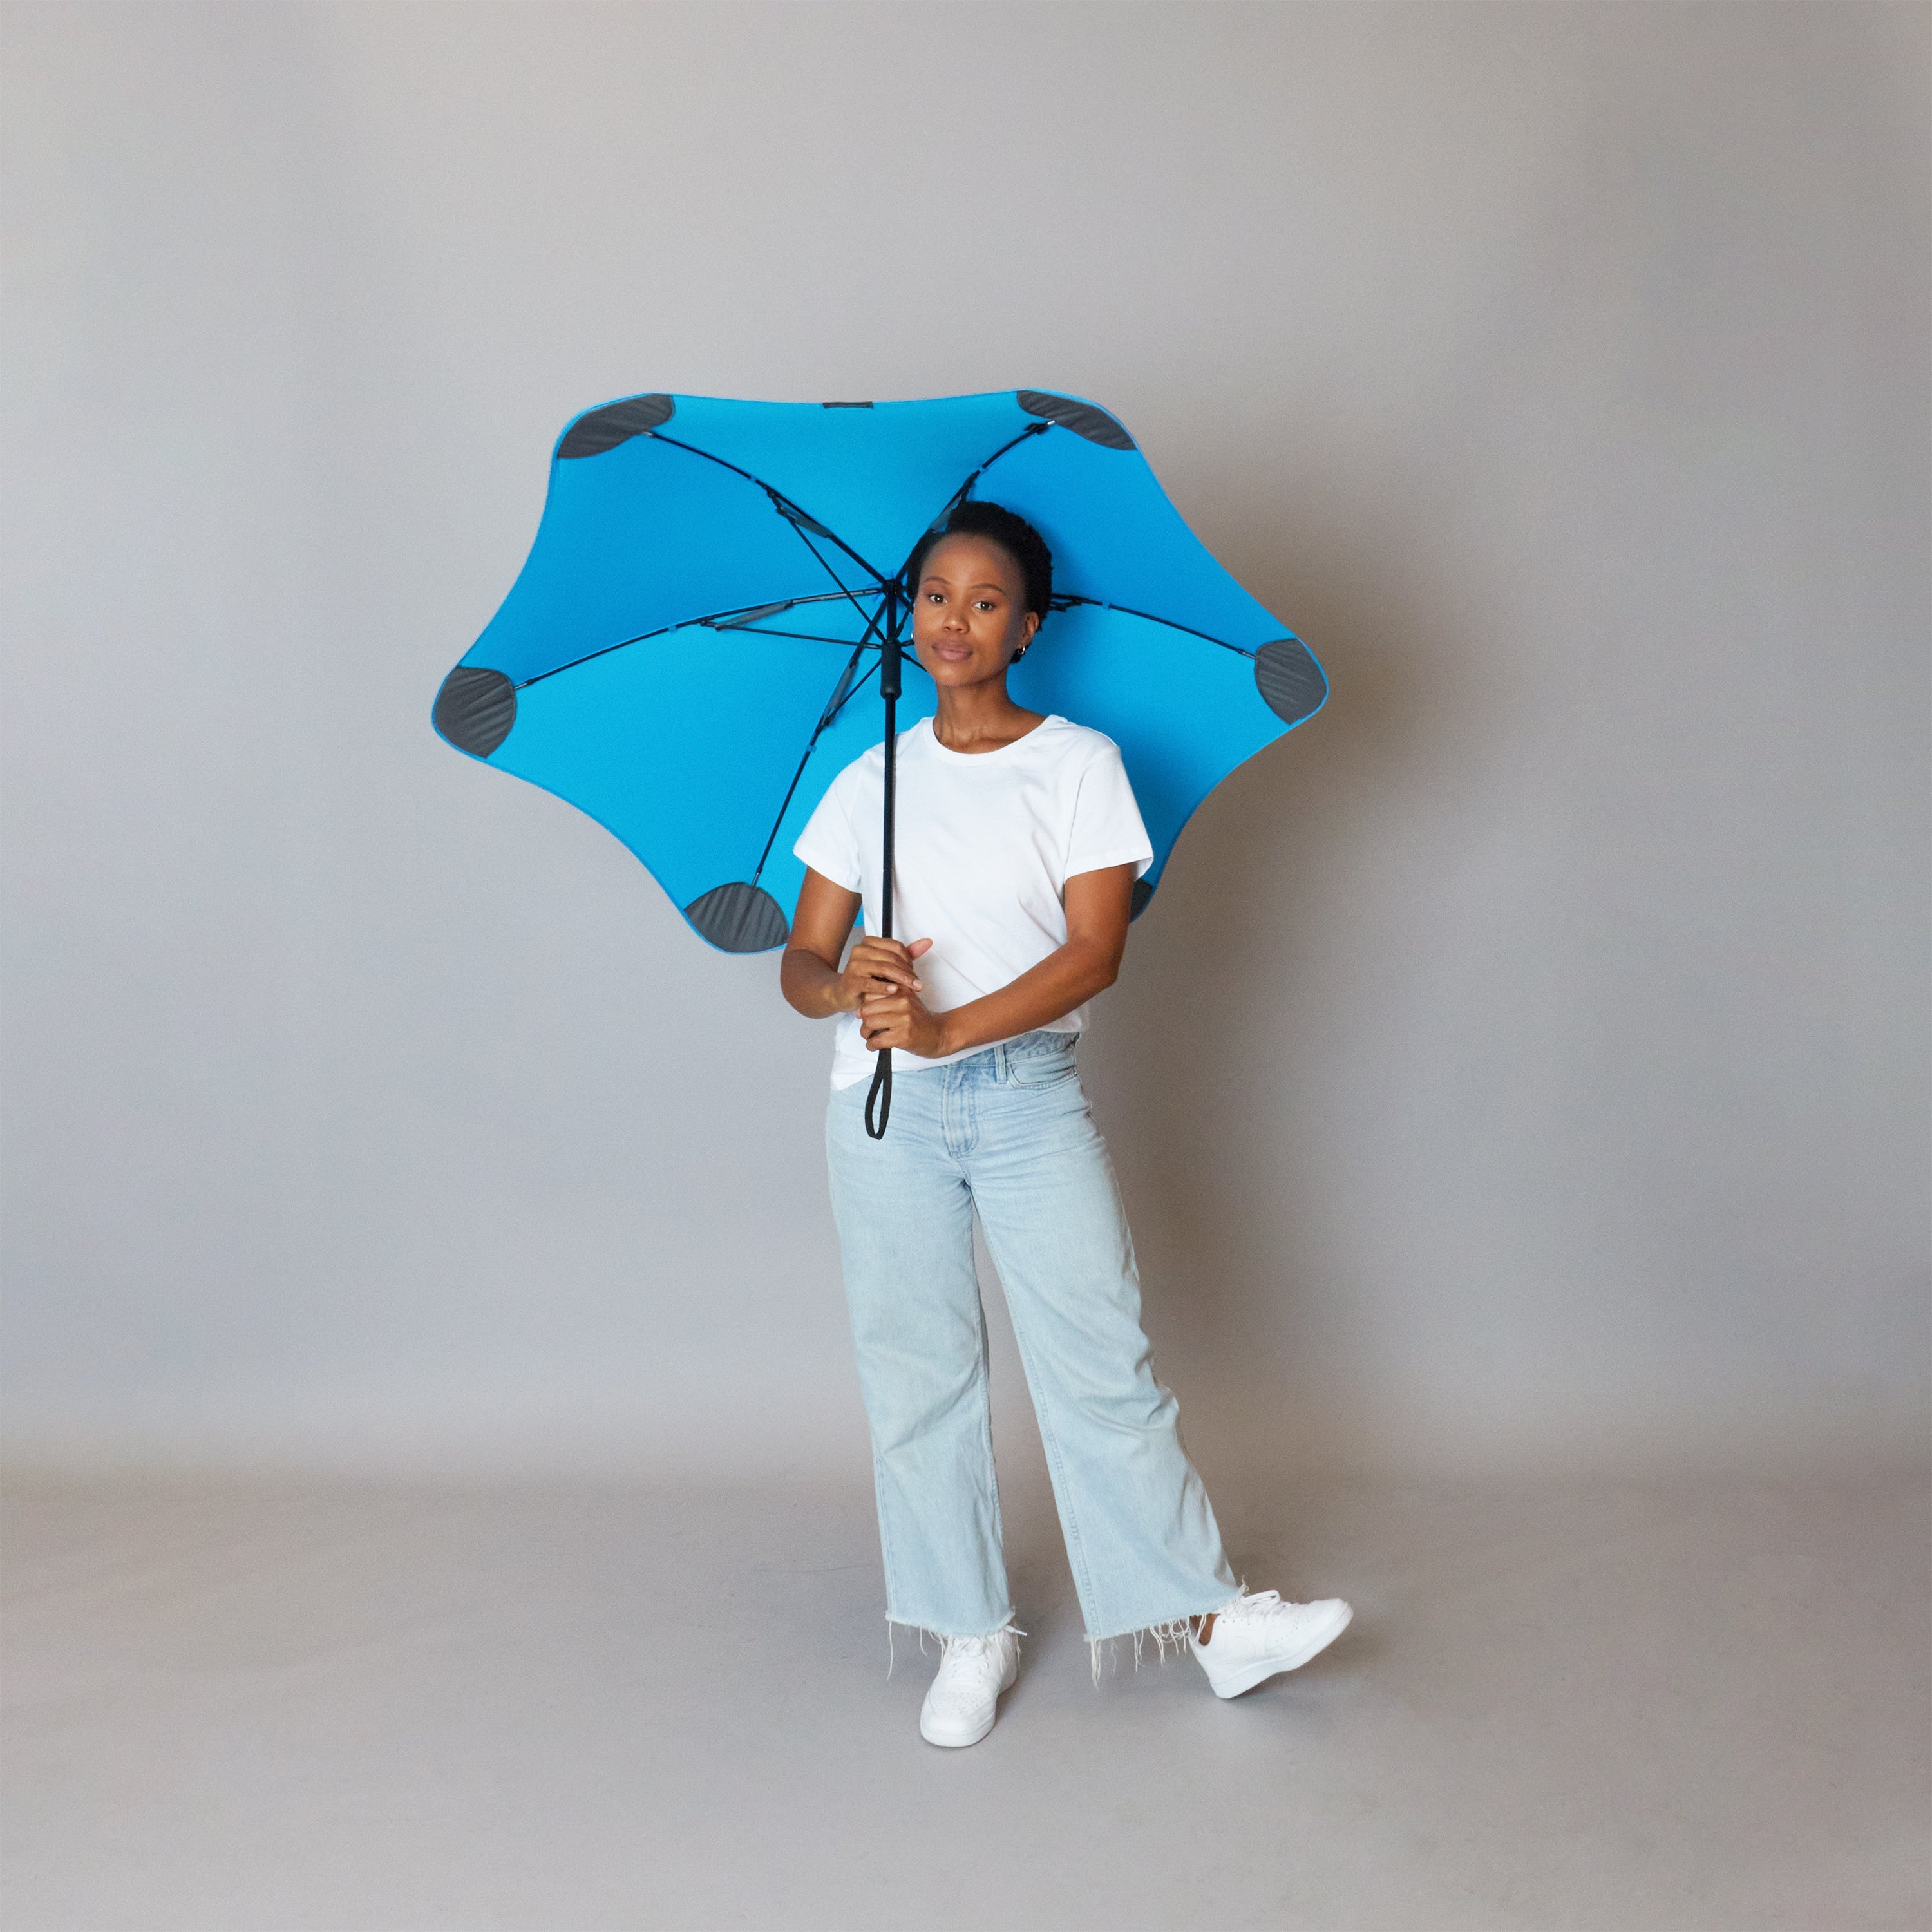 2020 Classic Blue Blunt Umbrella Model Front View